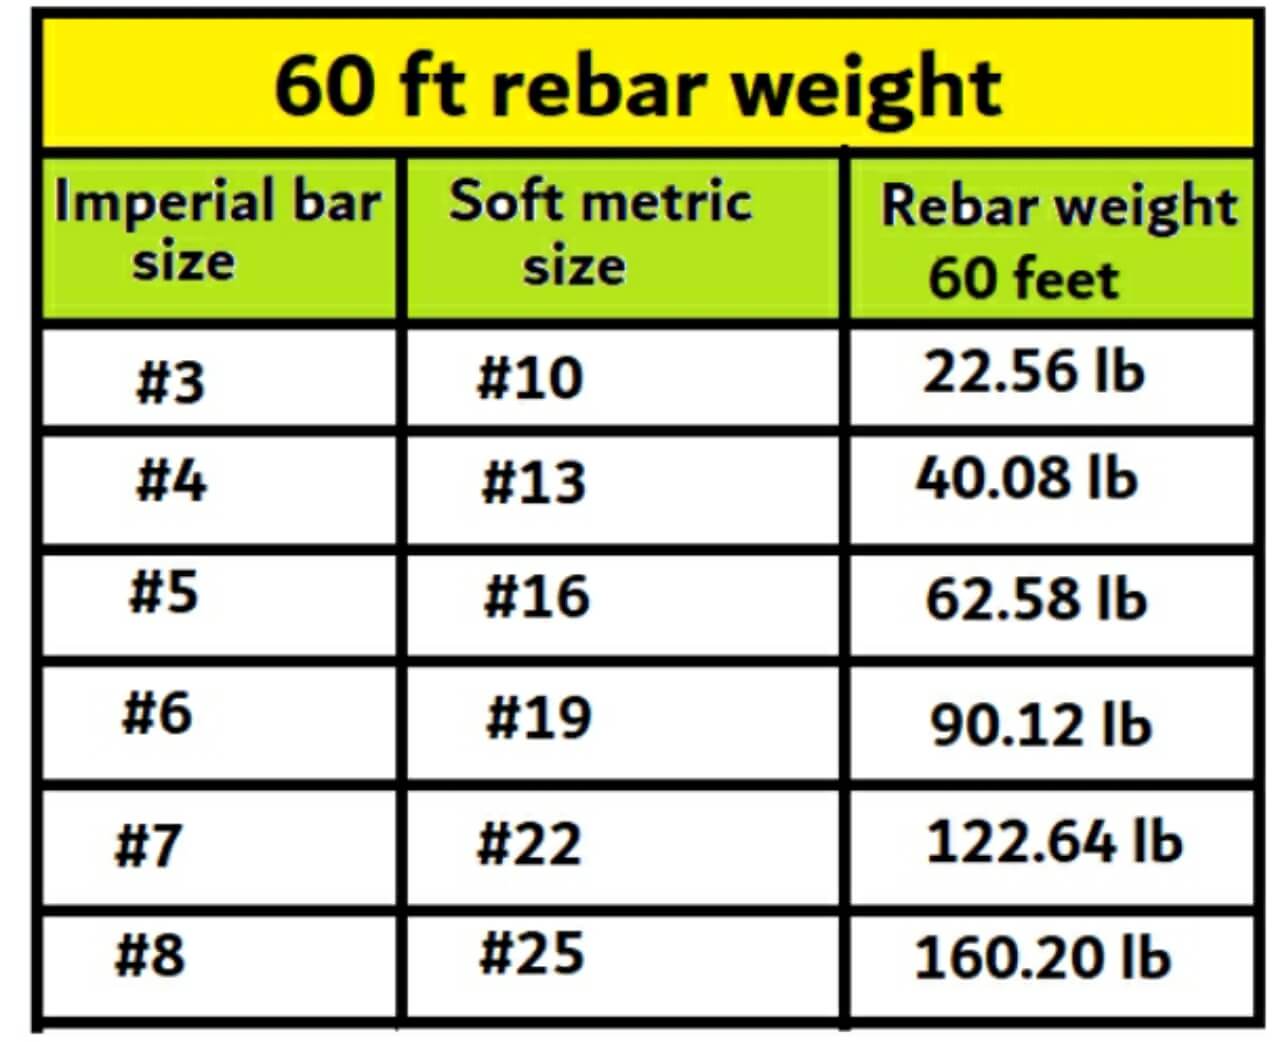 60 feet rebar weight